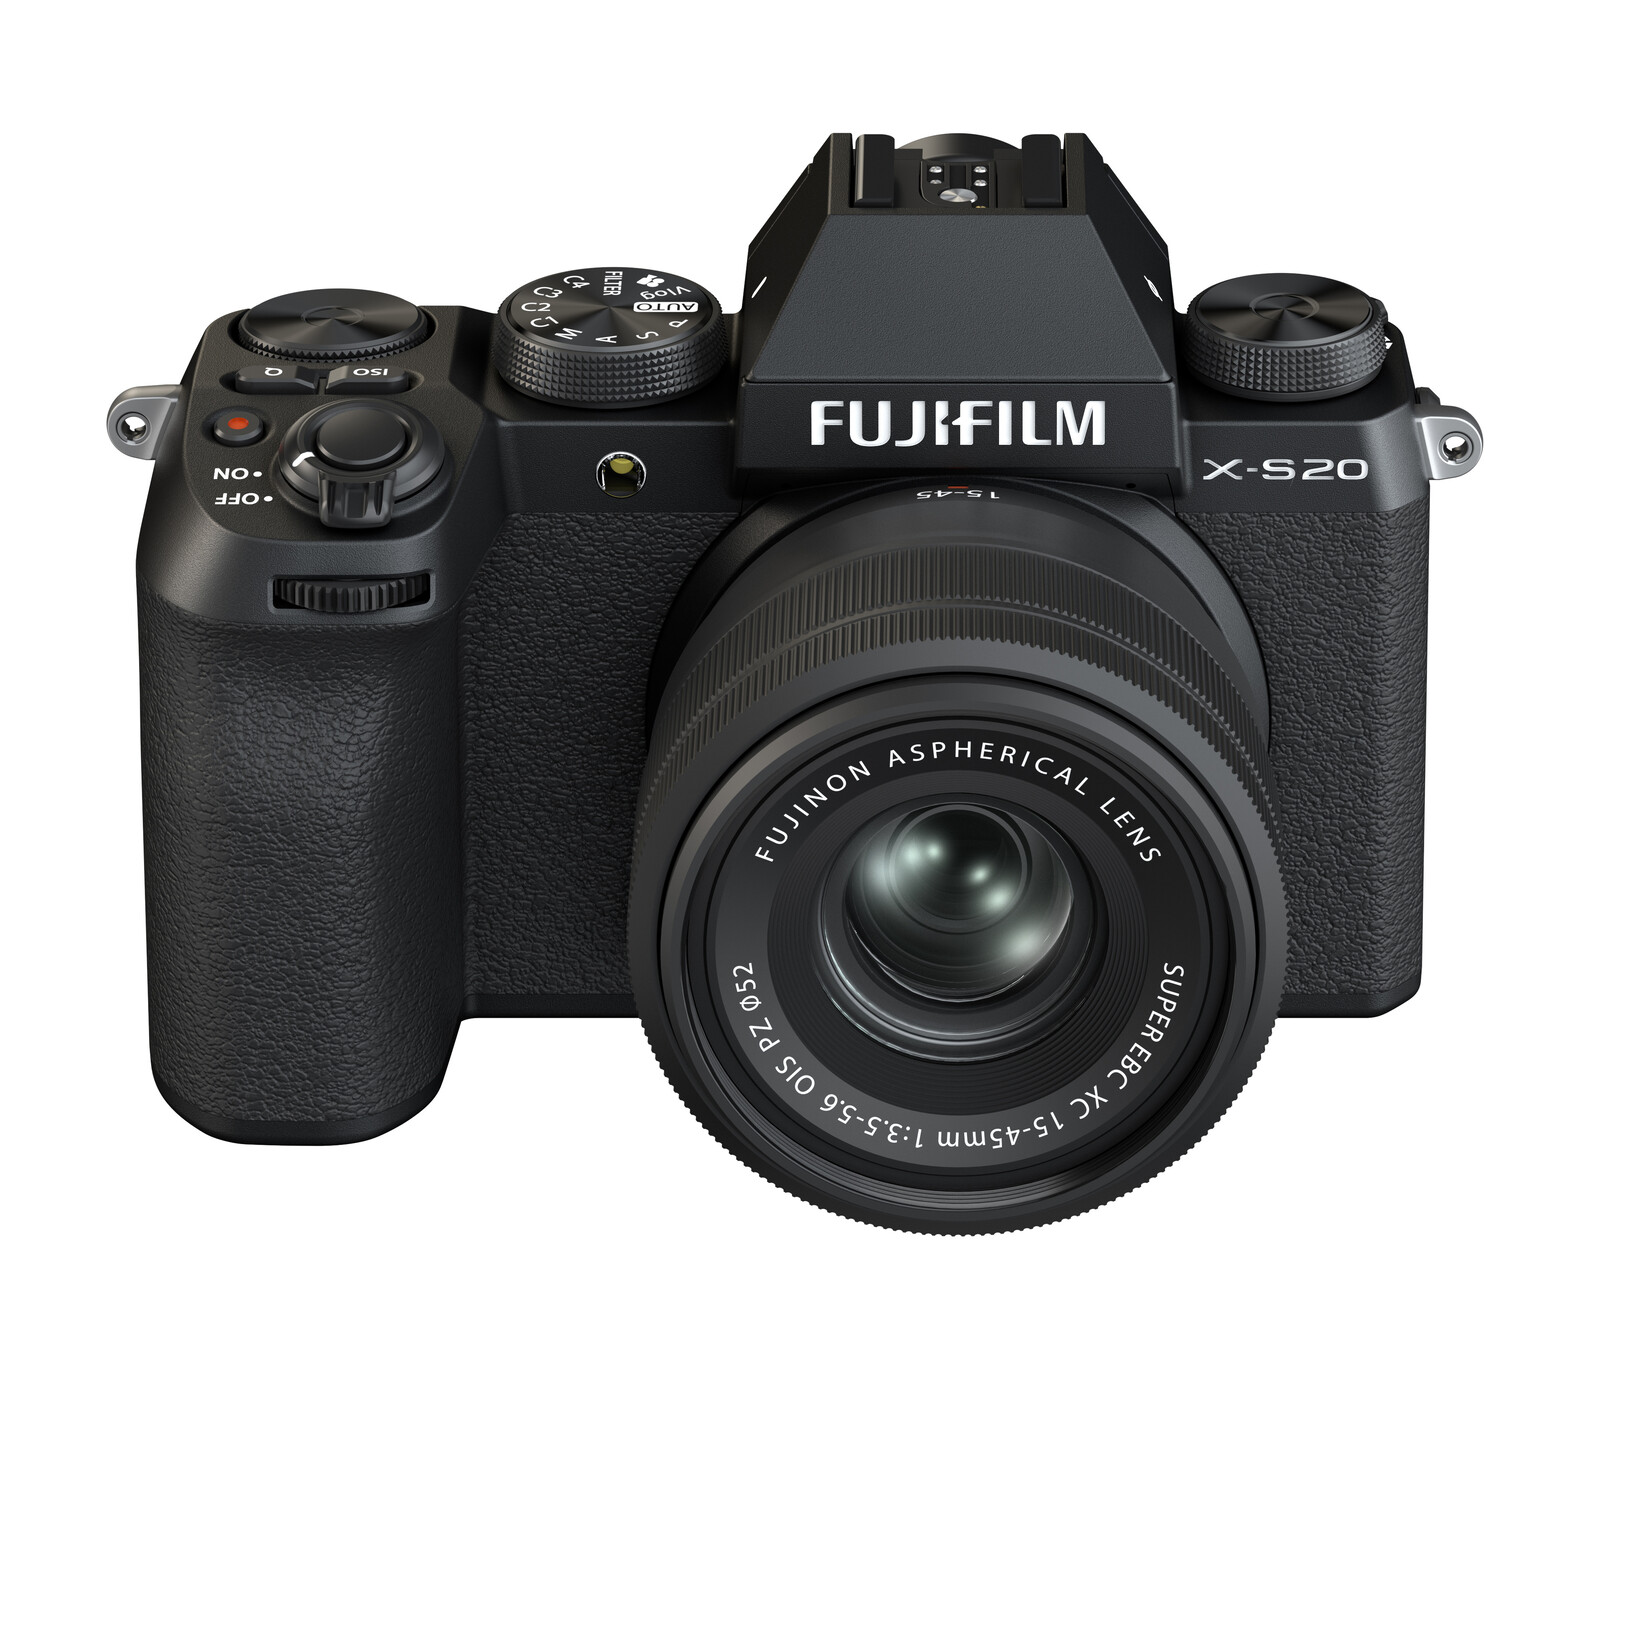 Fujifilm X-S20 Body, Black with XC15-45mmF3.5-5.6 OIS PZ Lens Kit